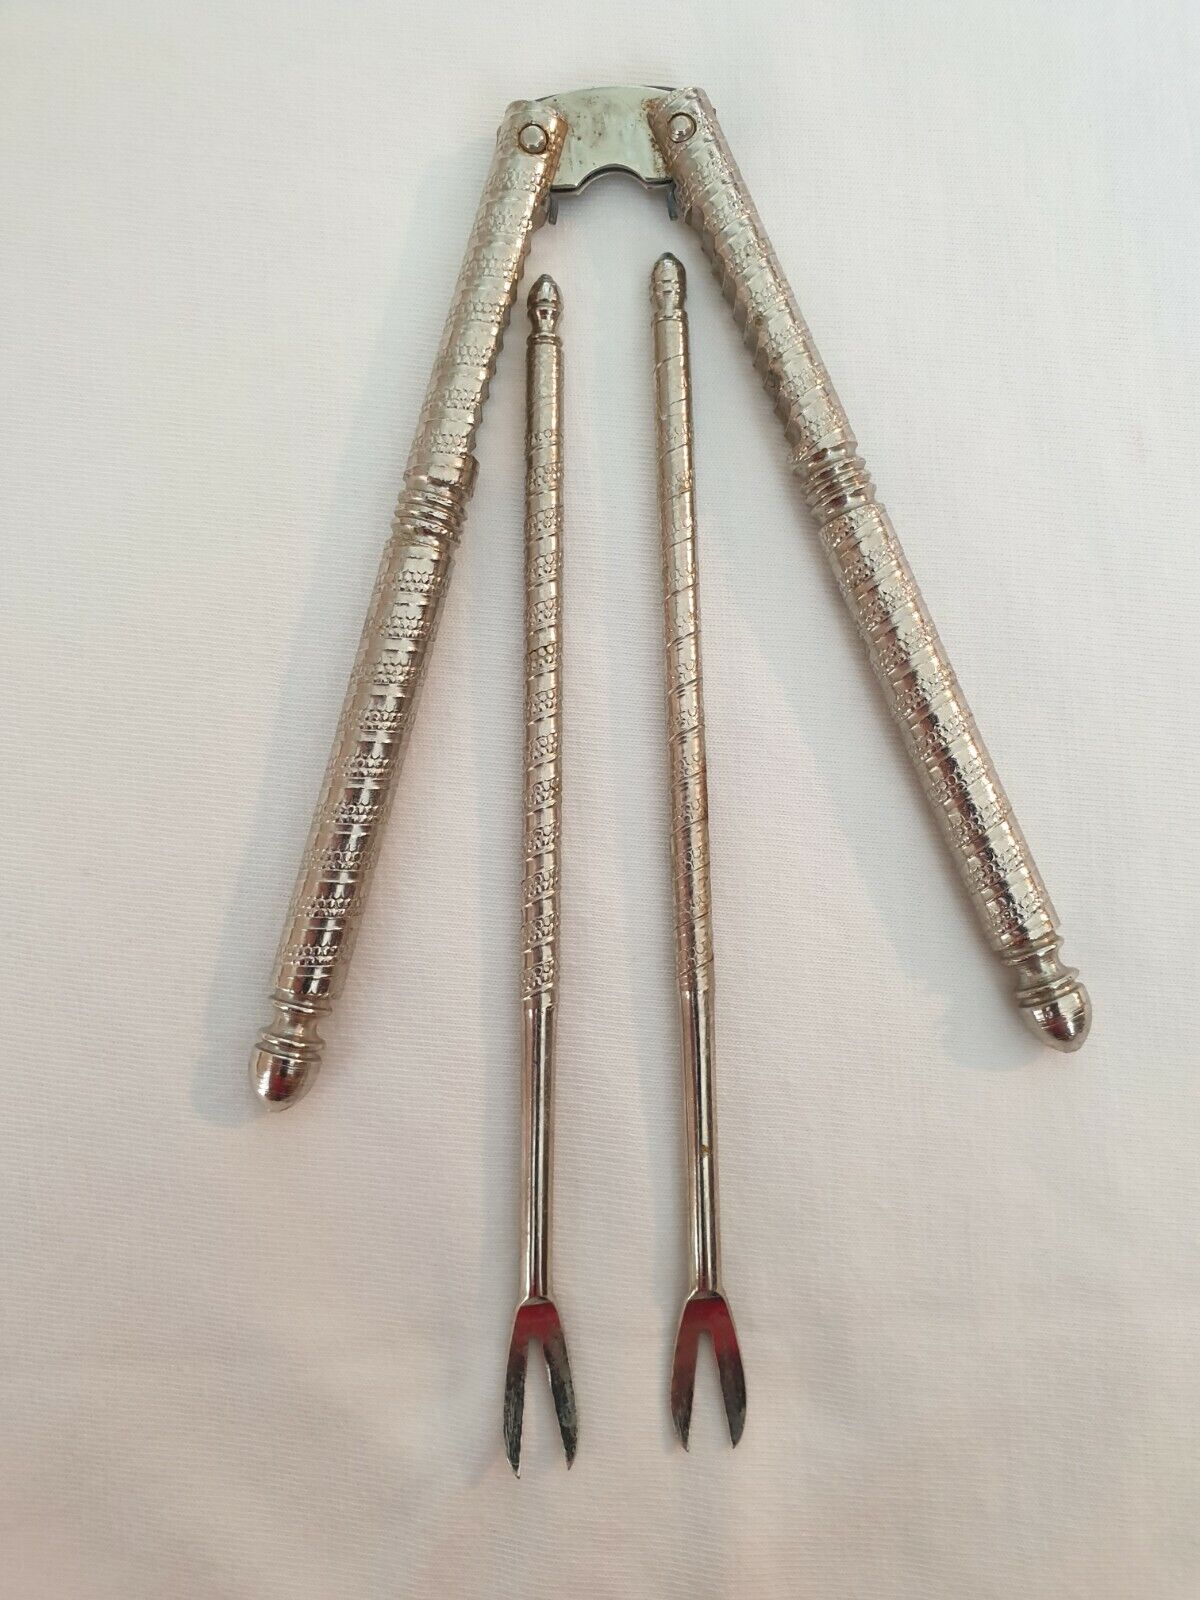 Vintage HMQ Metal Nutcracker with 2 Forks